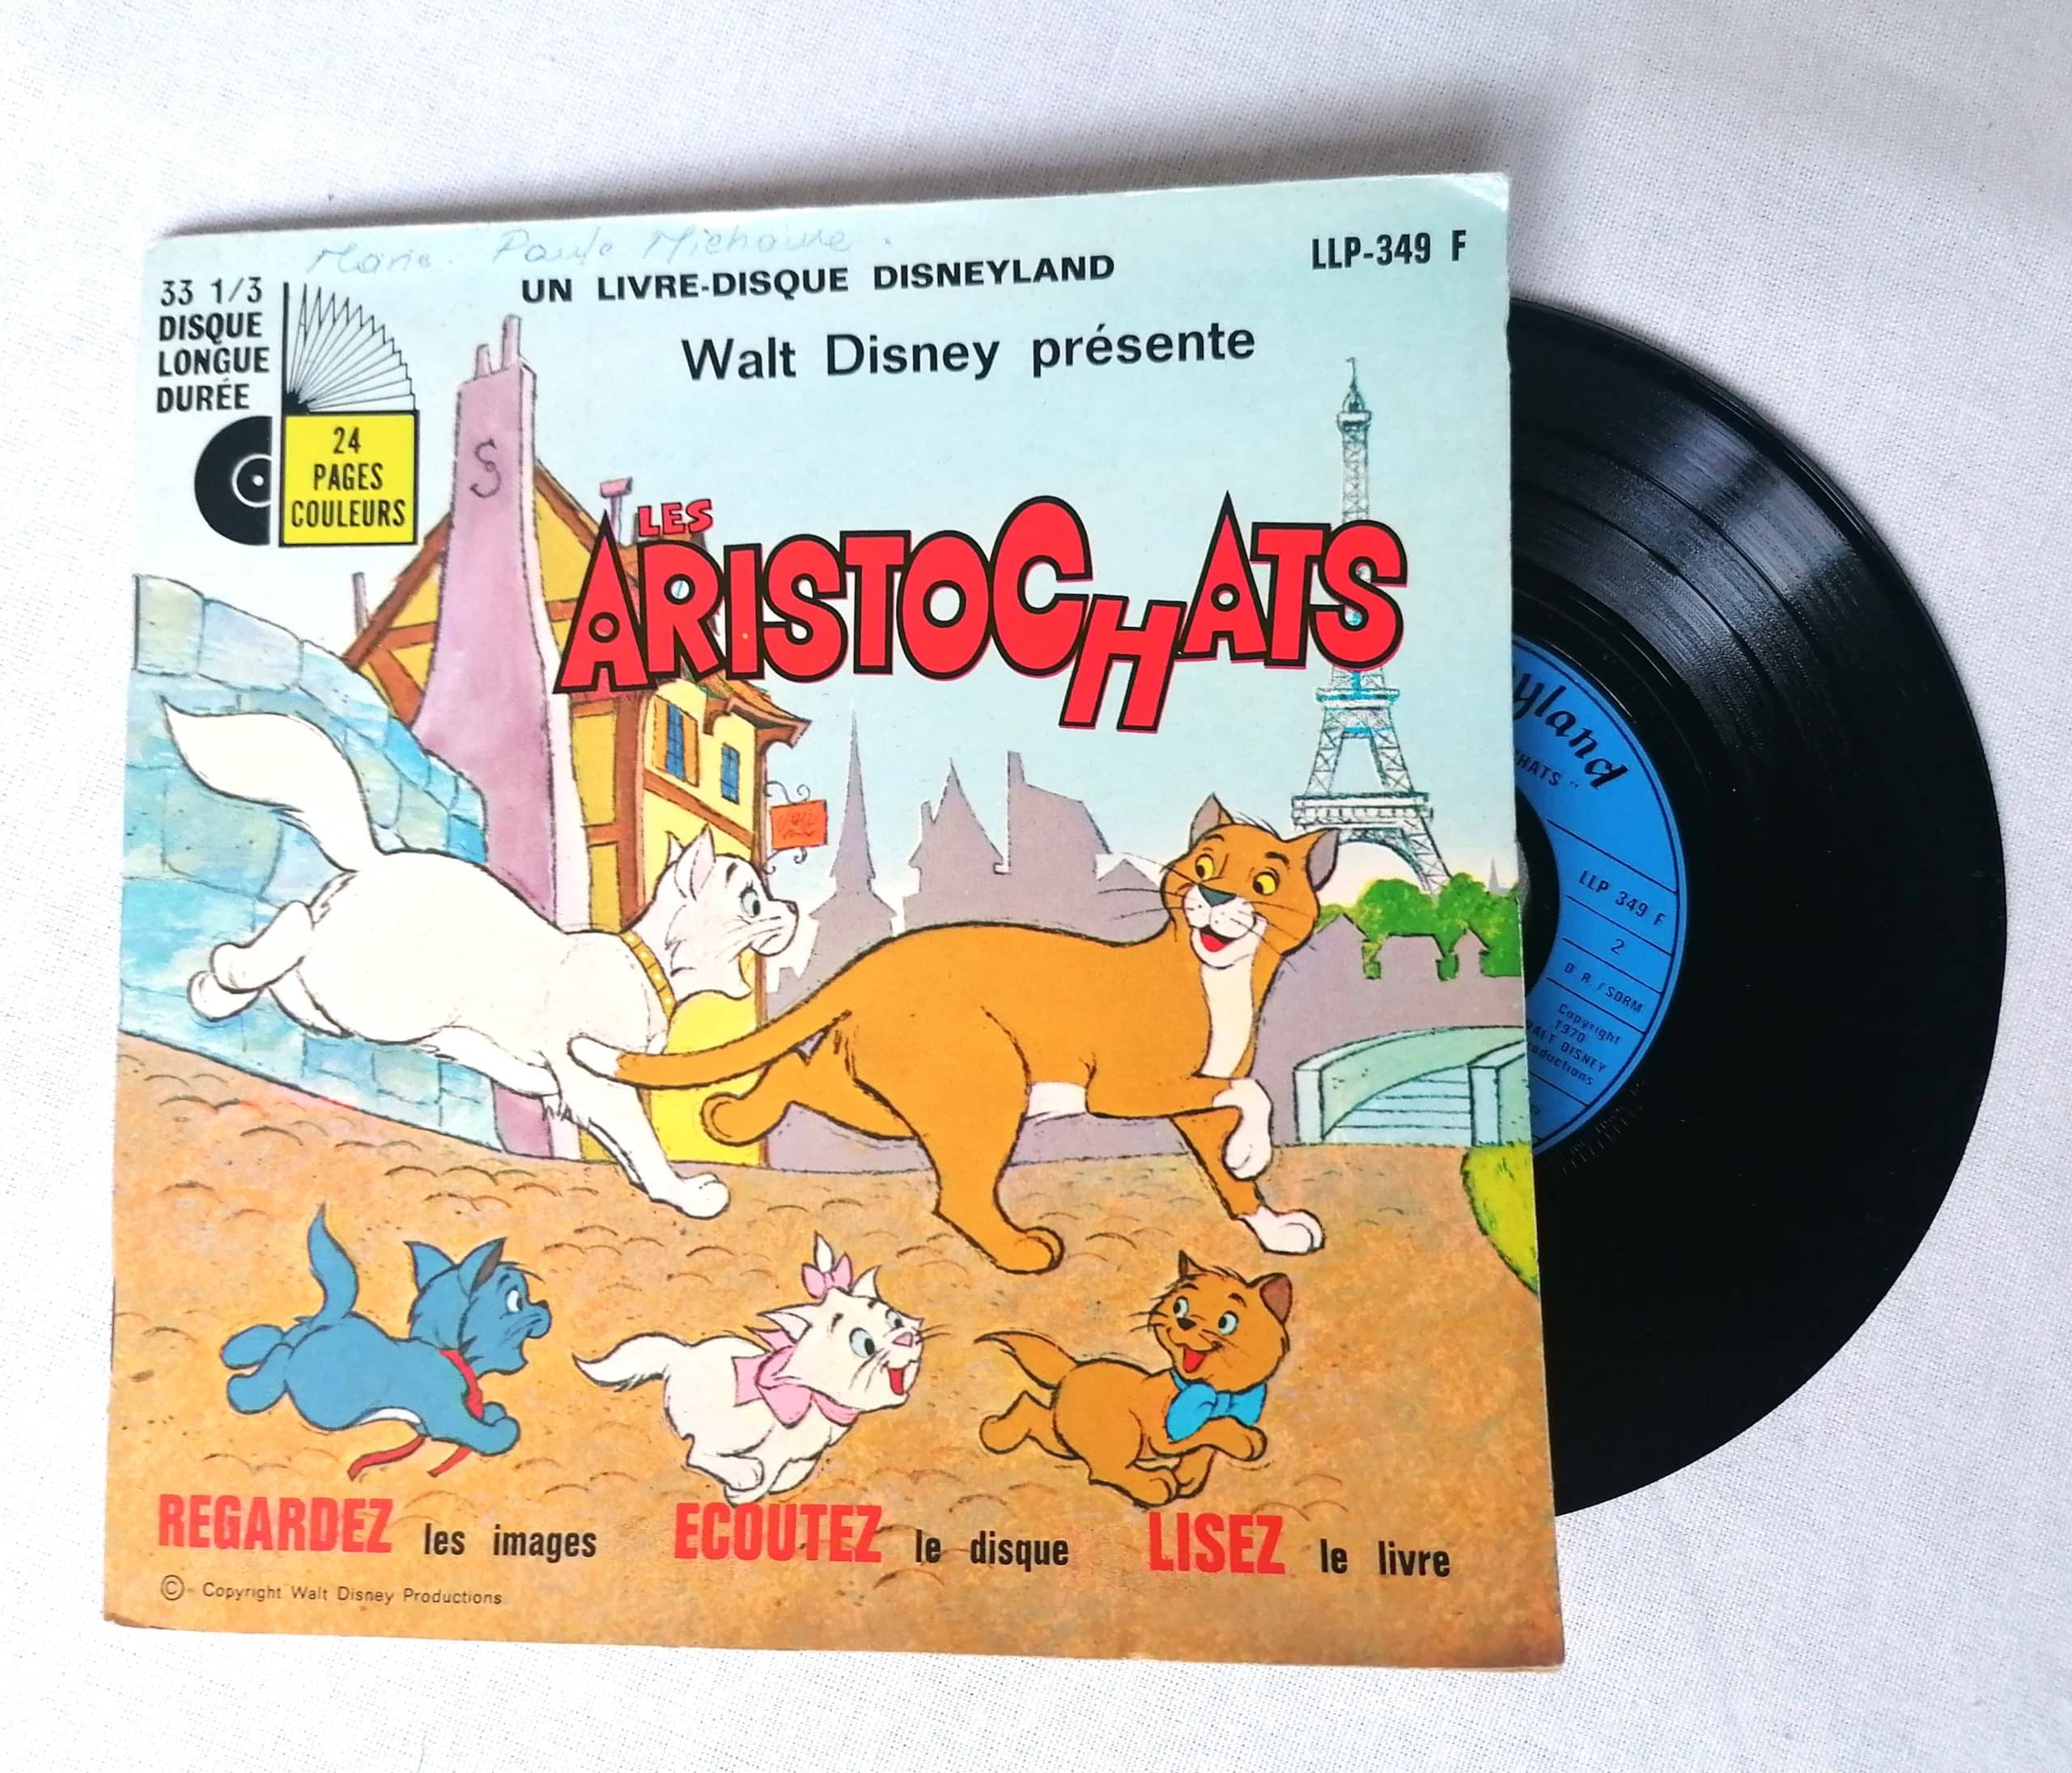 Disney Livre-disque vinyle Les Aristochas 33 1/3 Tours